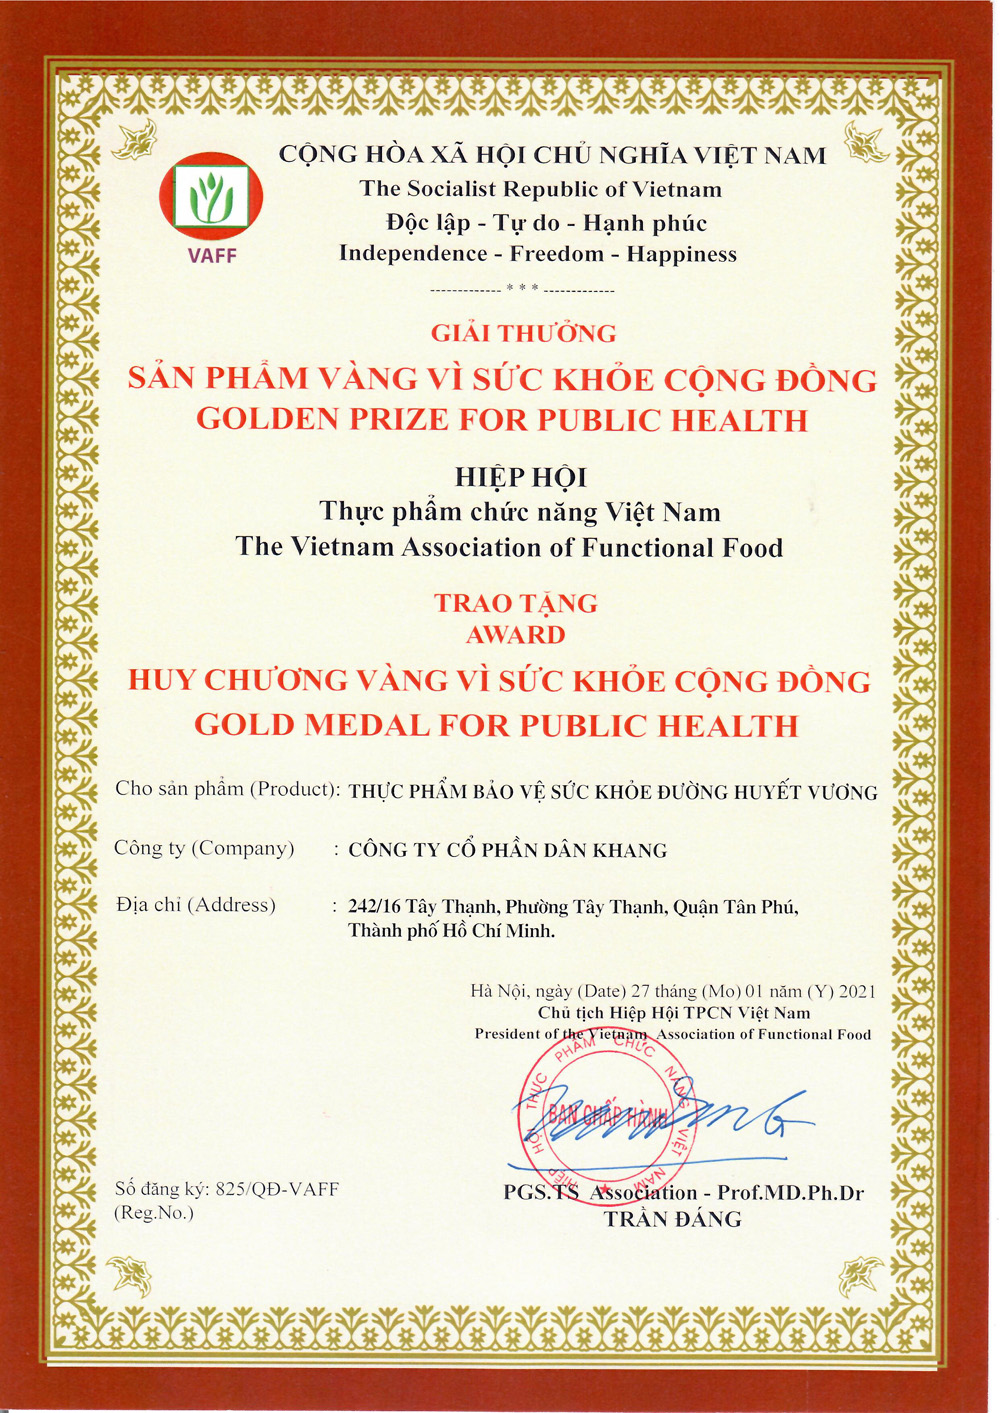 Sản phẩm vinh dự đạt huy chương vàng trong chương trình Sản phẩm vàng vì sức khỏe cộng đồng do Hiệp hội TPCN Việt Nam trao tặng